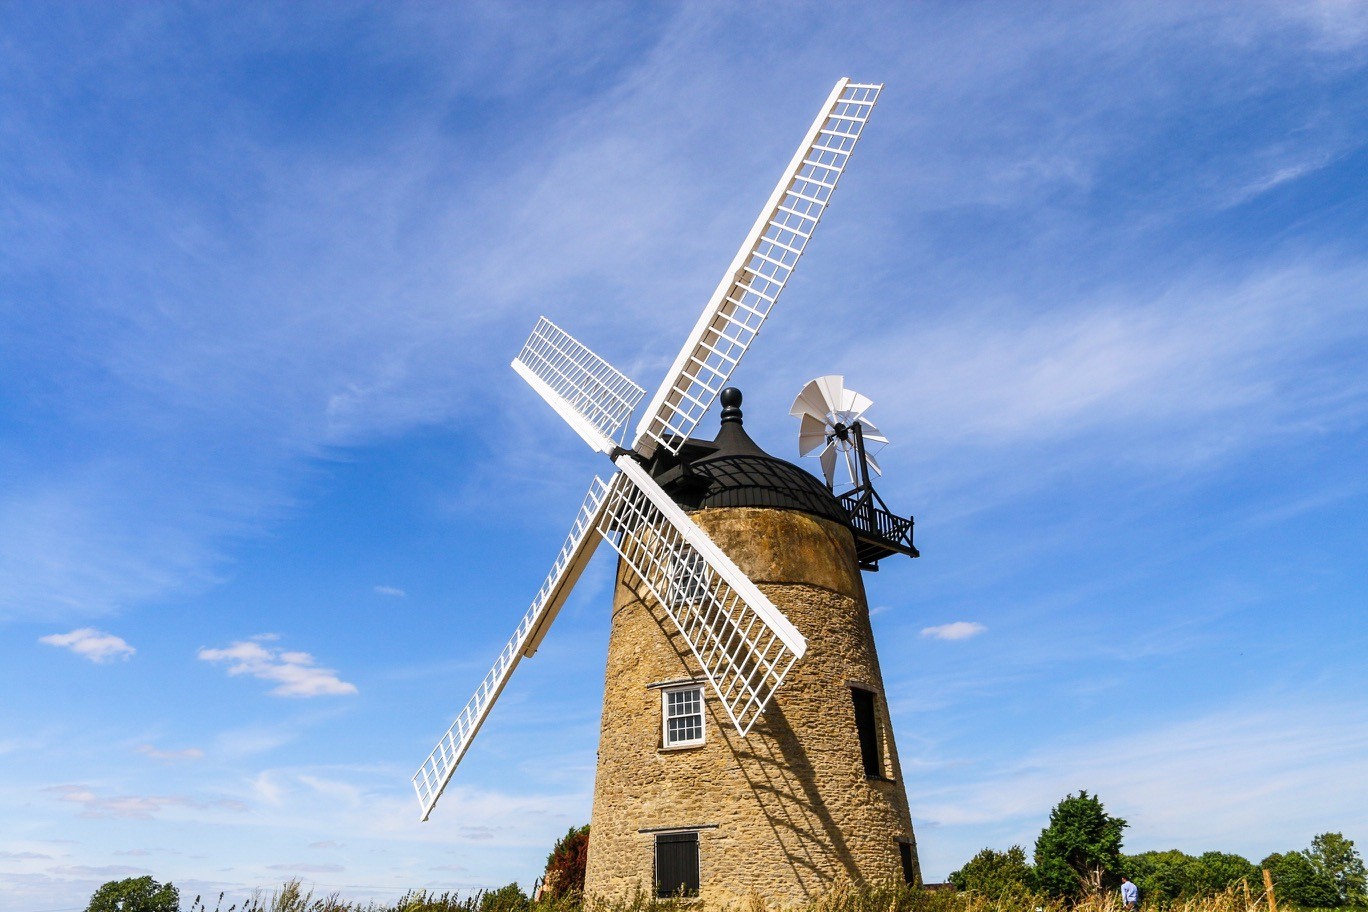 windmill windmill